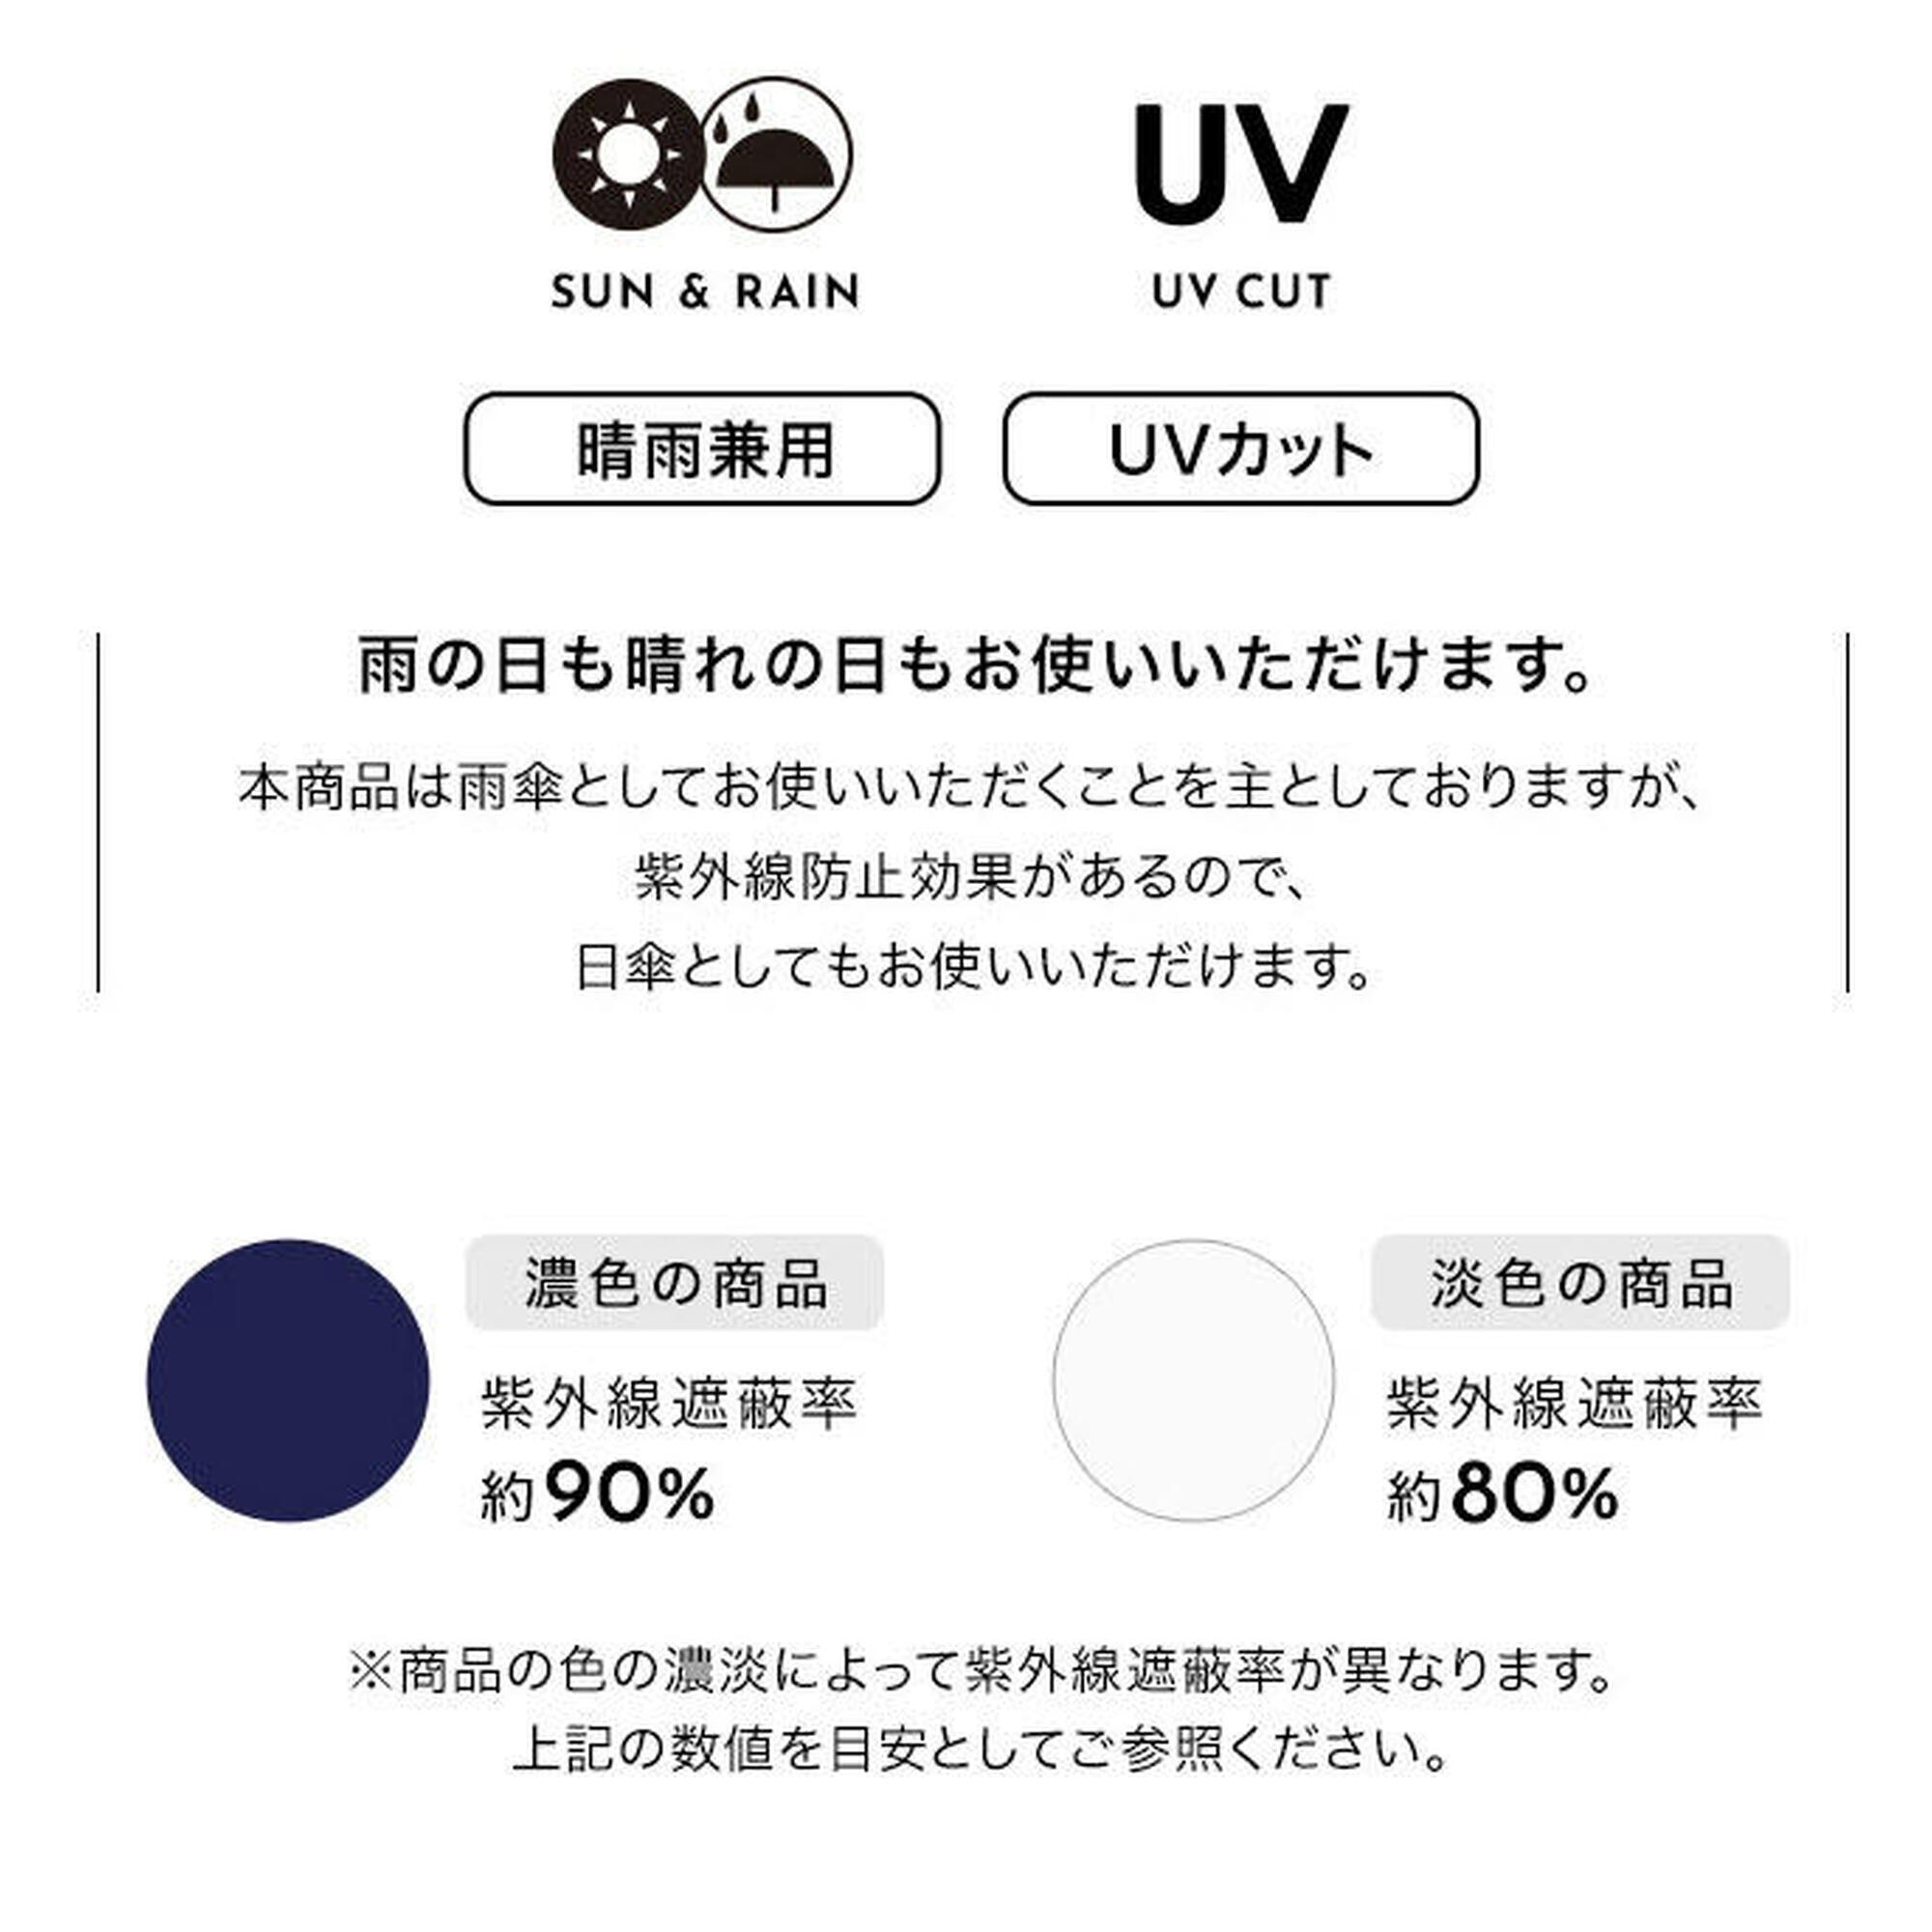 UX系列雙人用縮骨雨傘 - 灰/藍